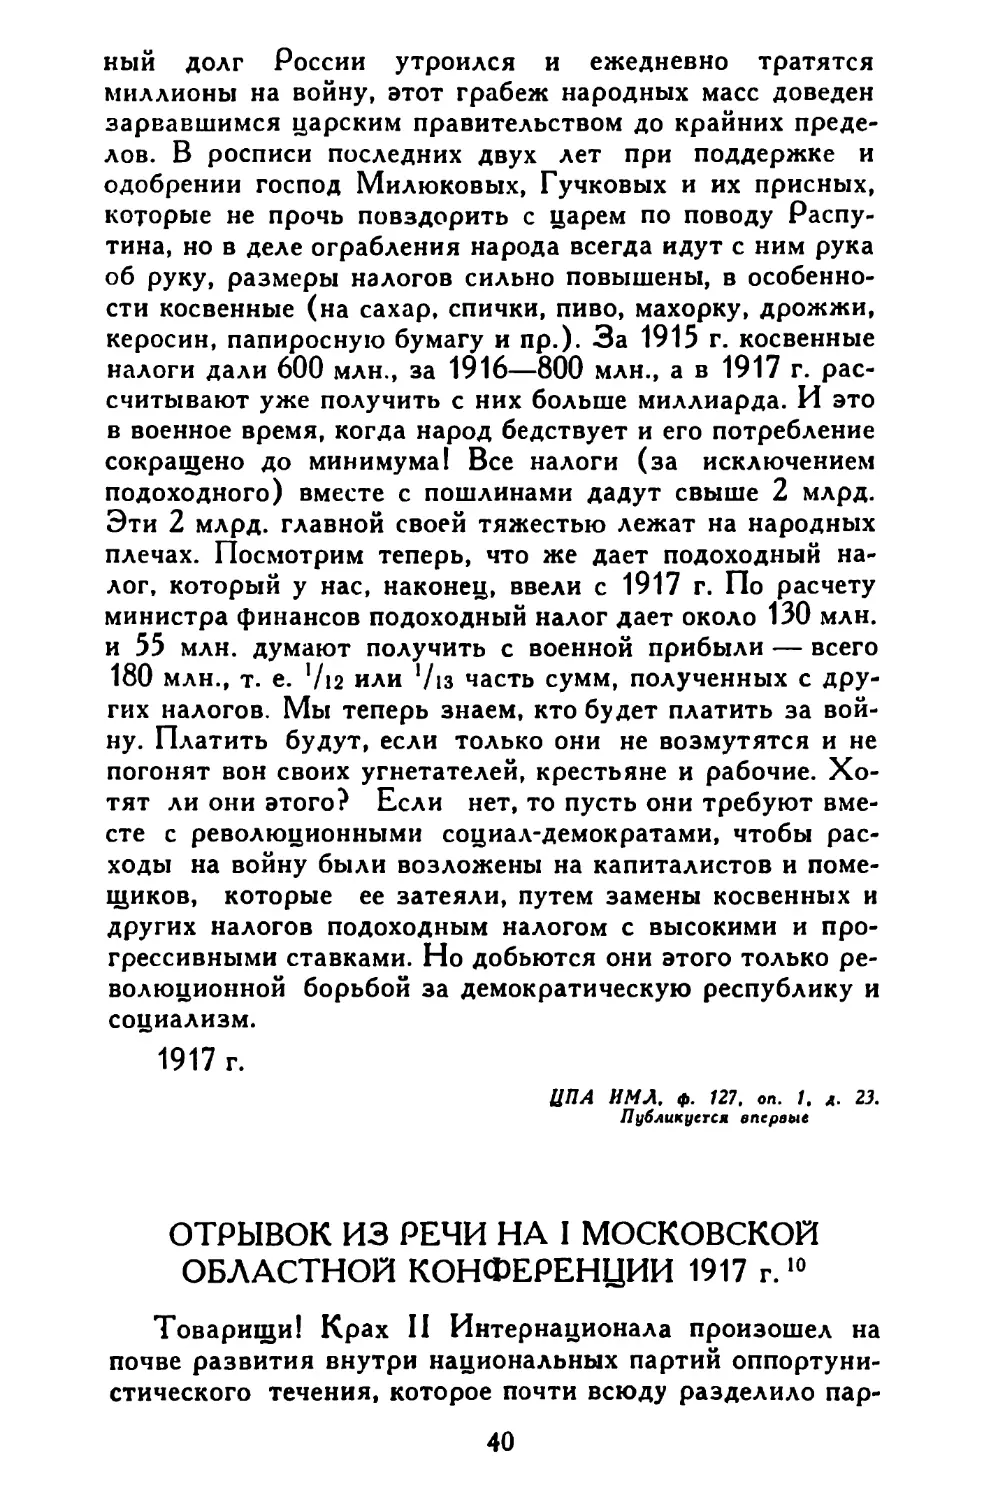 Отрывок из речи на I Московской областной конференции 1917 г.